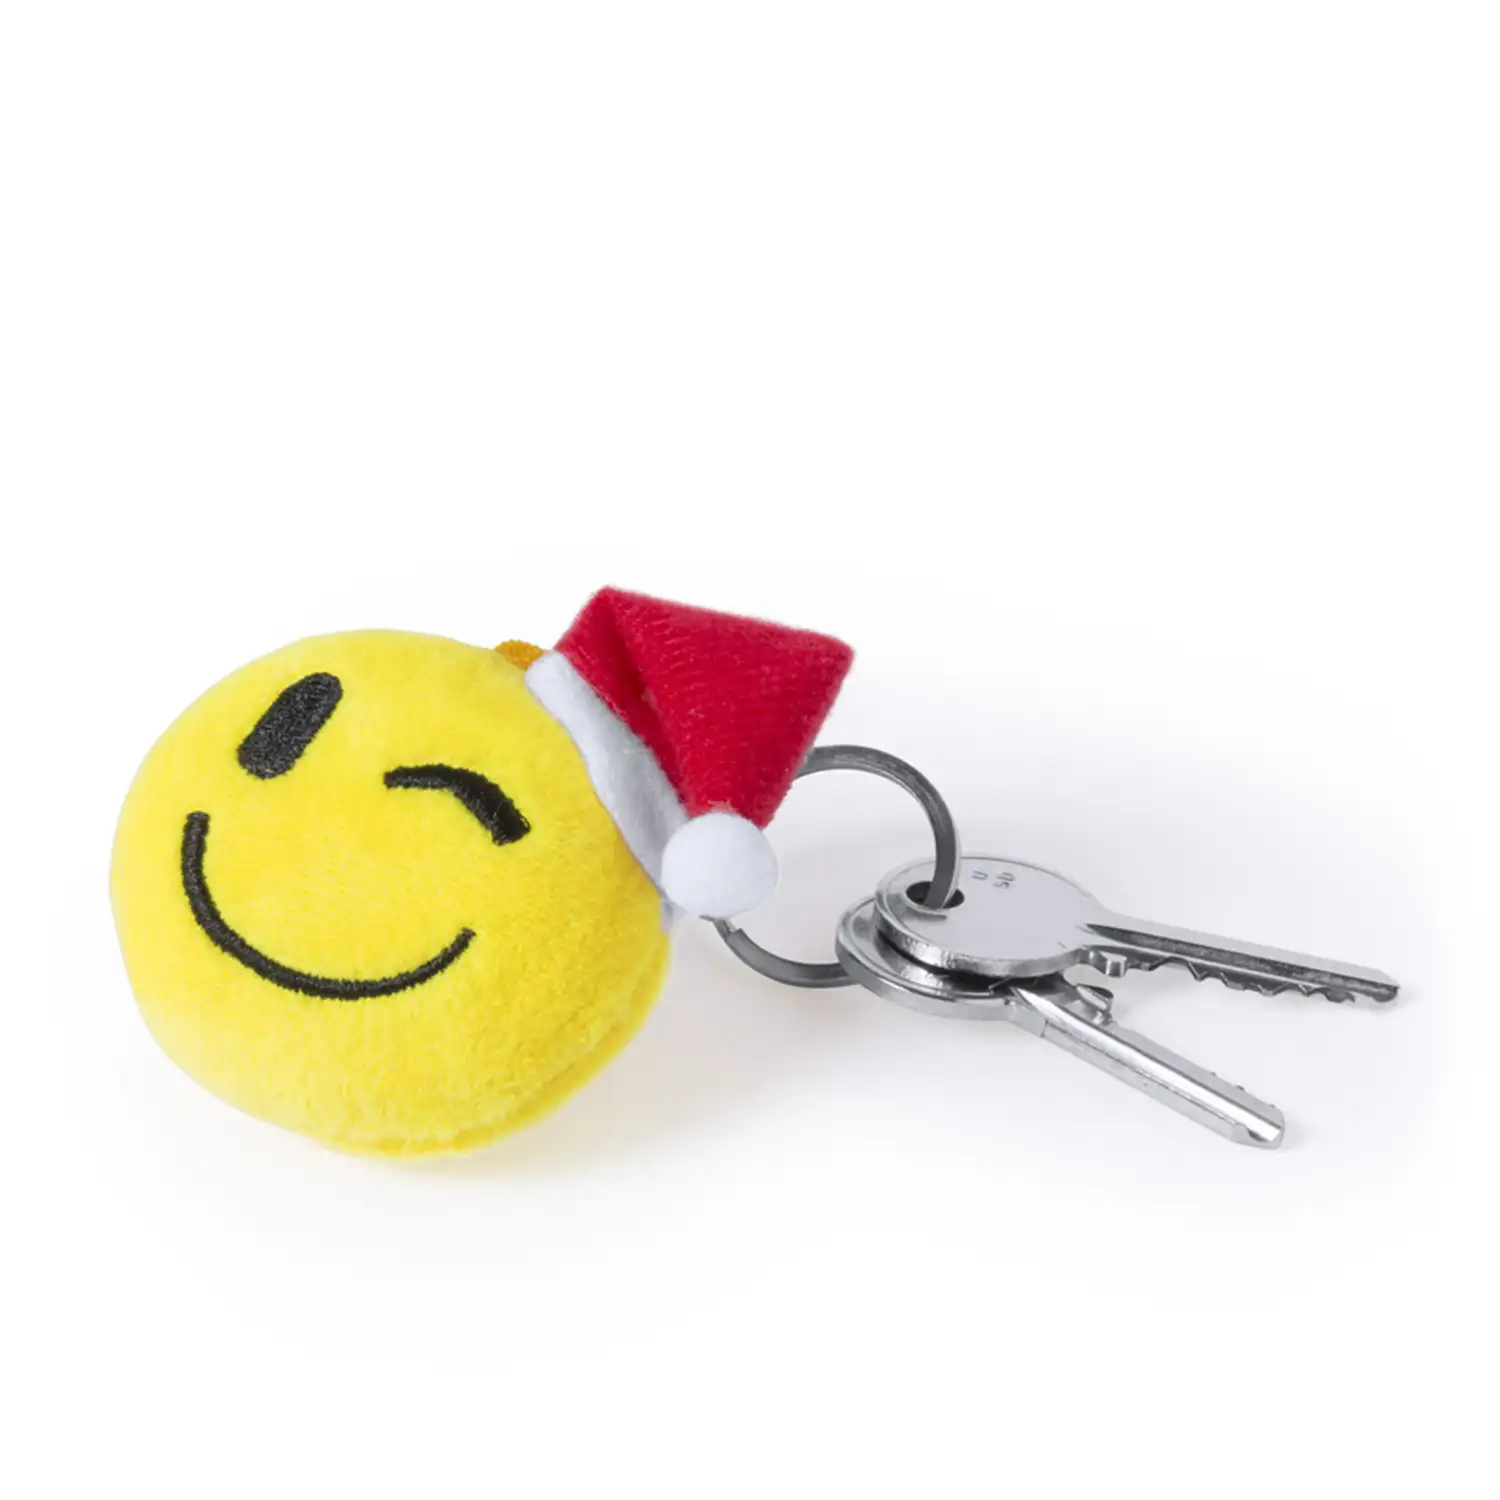 Llavero de peluche de diseño emoji navideño guiño.